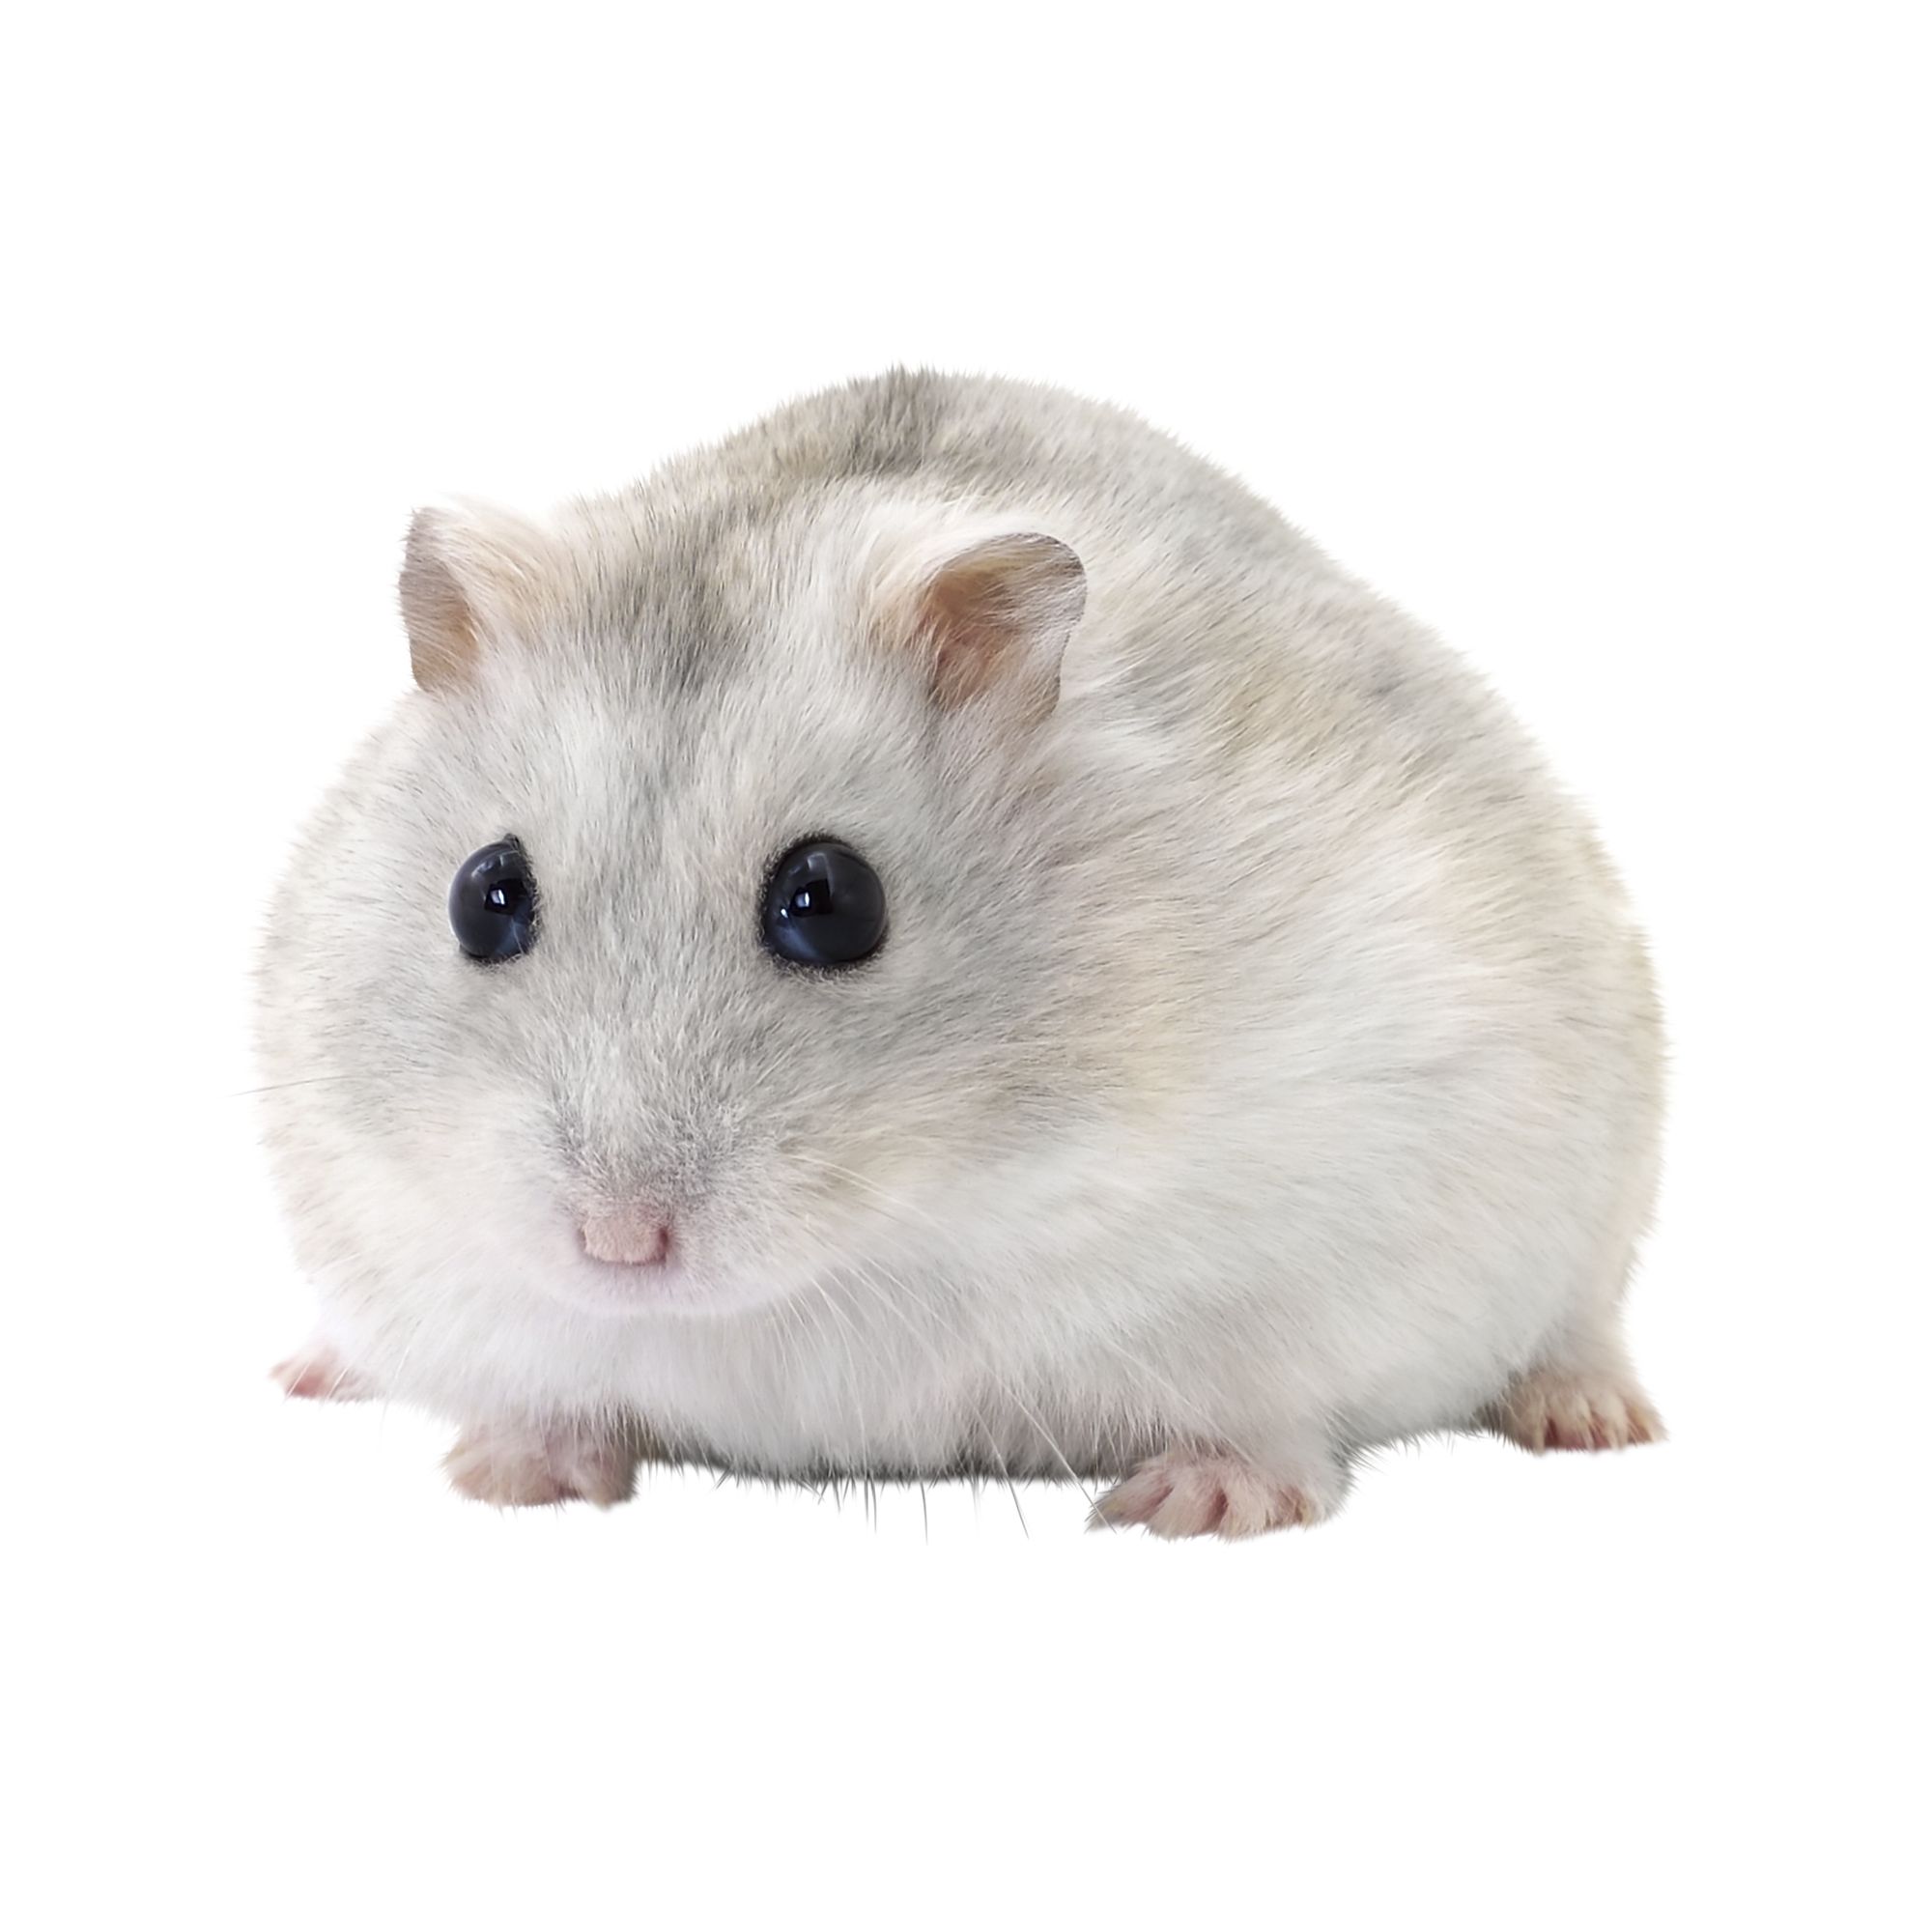 dwarf winter hamster